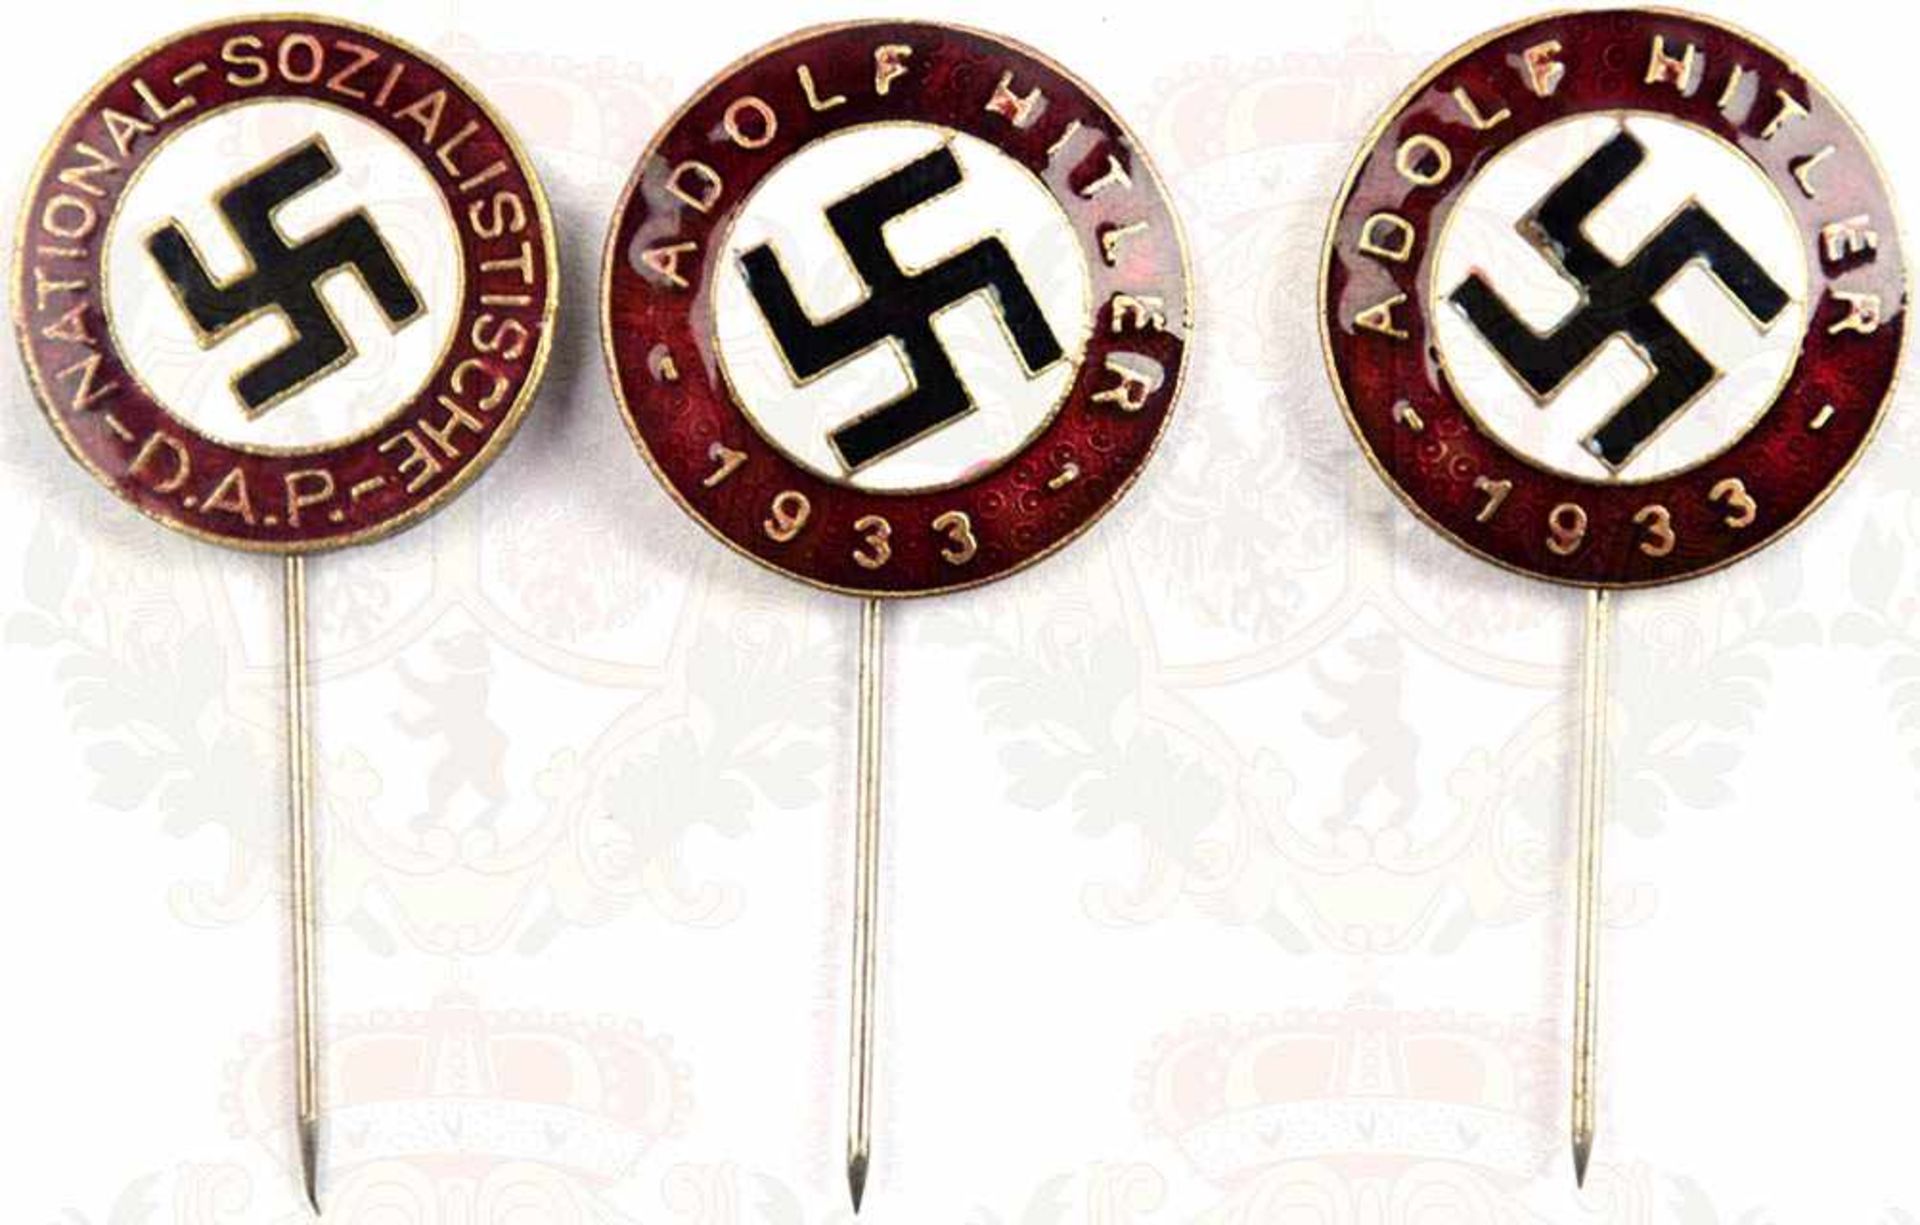 3 ABZEICHEN: 1 Mitgliedsabz. u. 2 Sympathie-Abz., diese bez. „Adolf Hitler 1933“, Buntmetall, s/w/